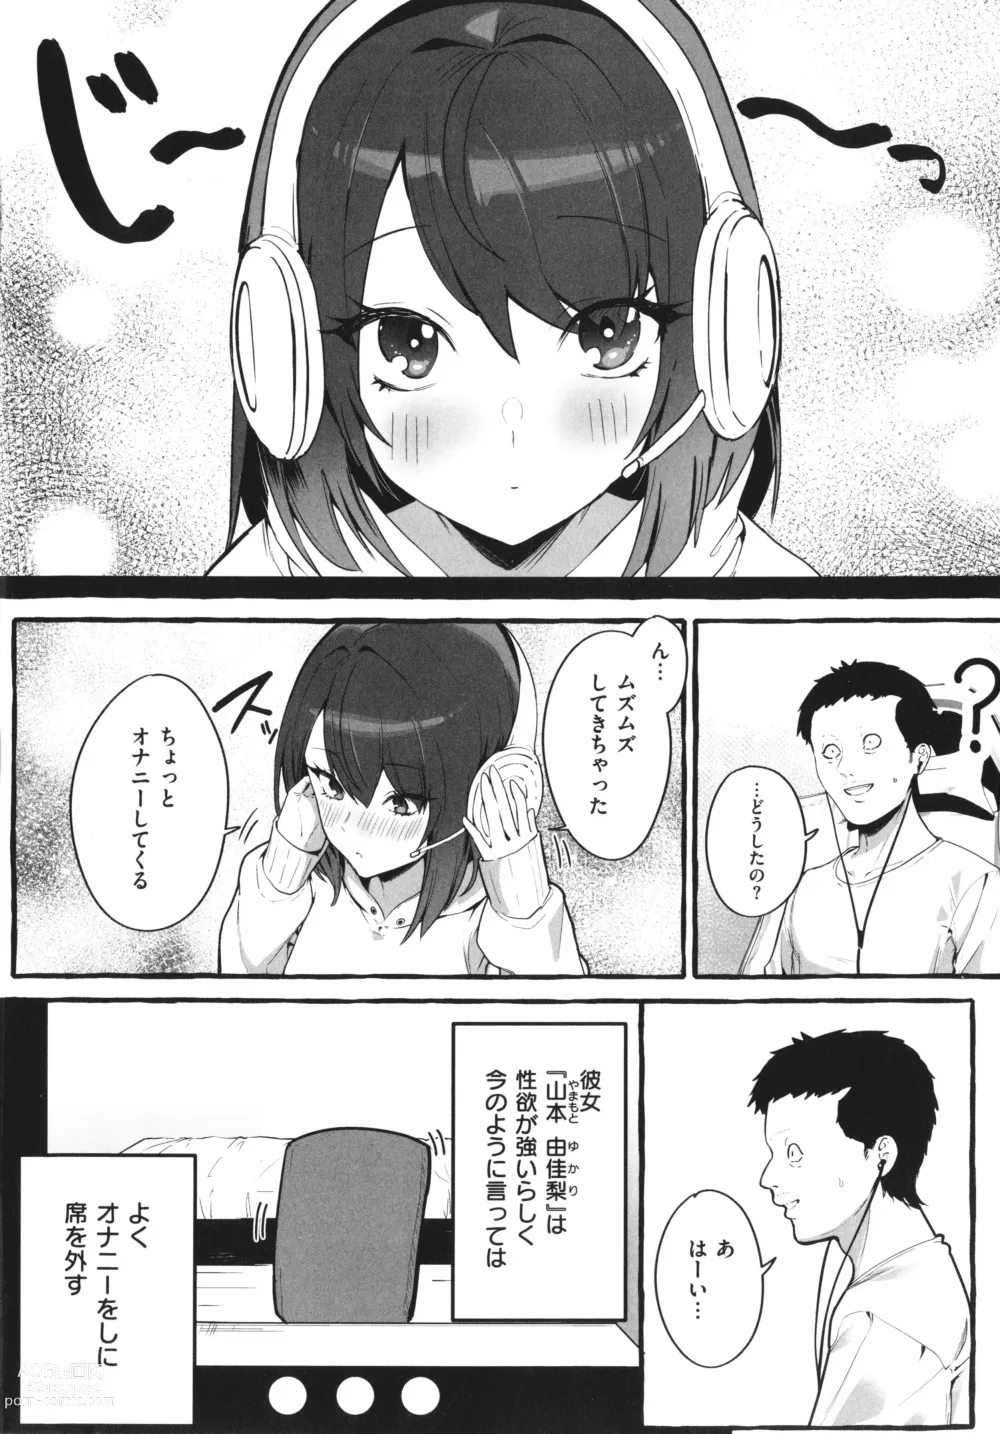 Page 7 of manga #Junai Kanojo